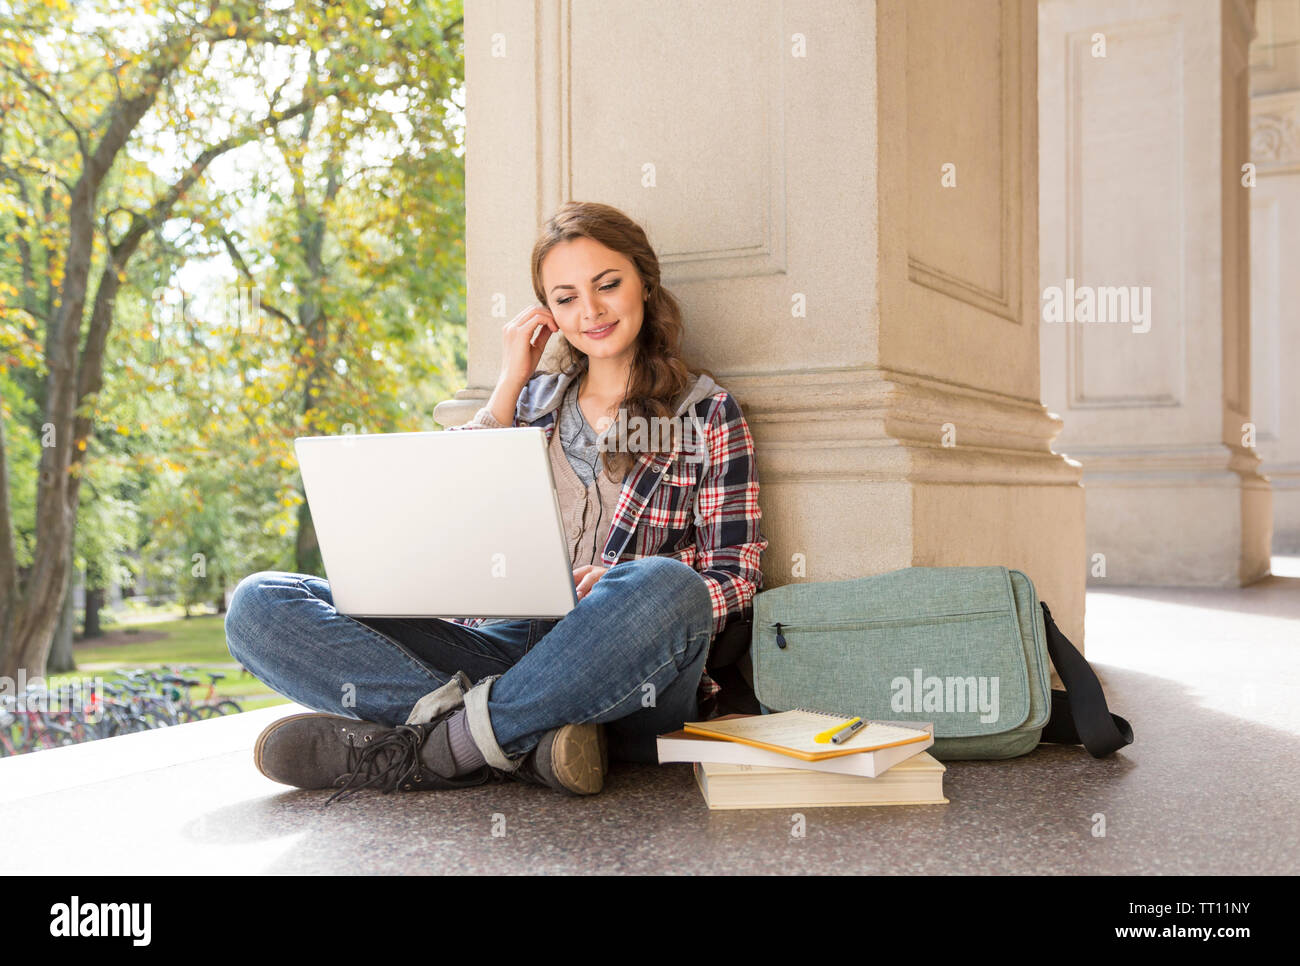 Jeune femme female college university student avec écouteurs écouteurs d'étudier à l'aide d'un ordinateur portable Banque D'Images